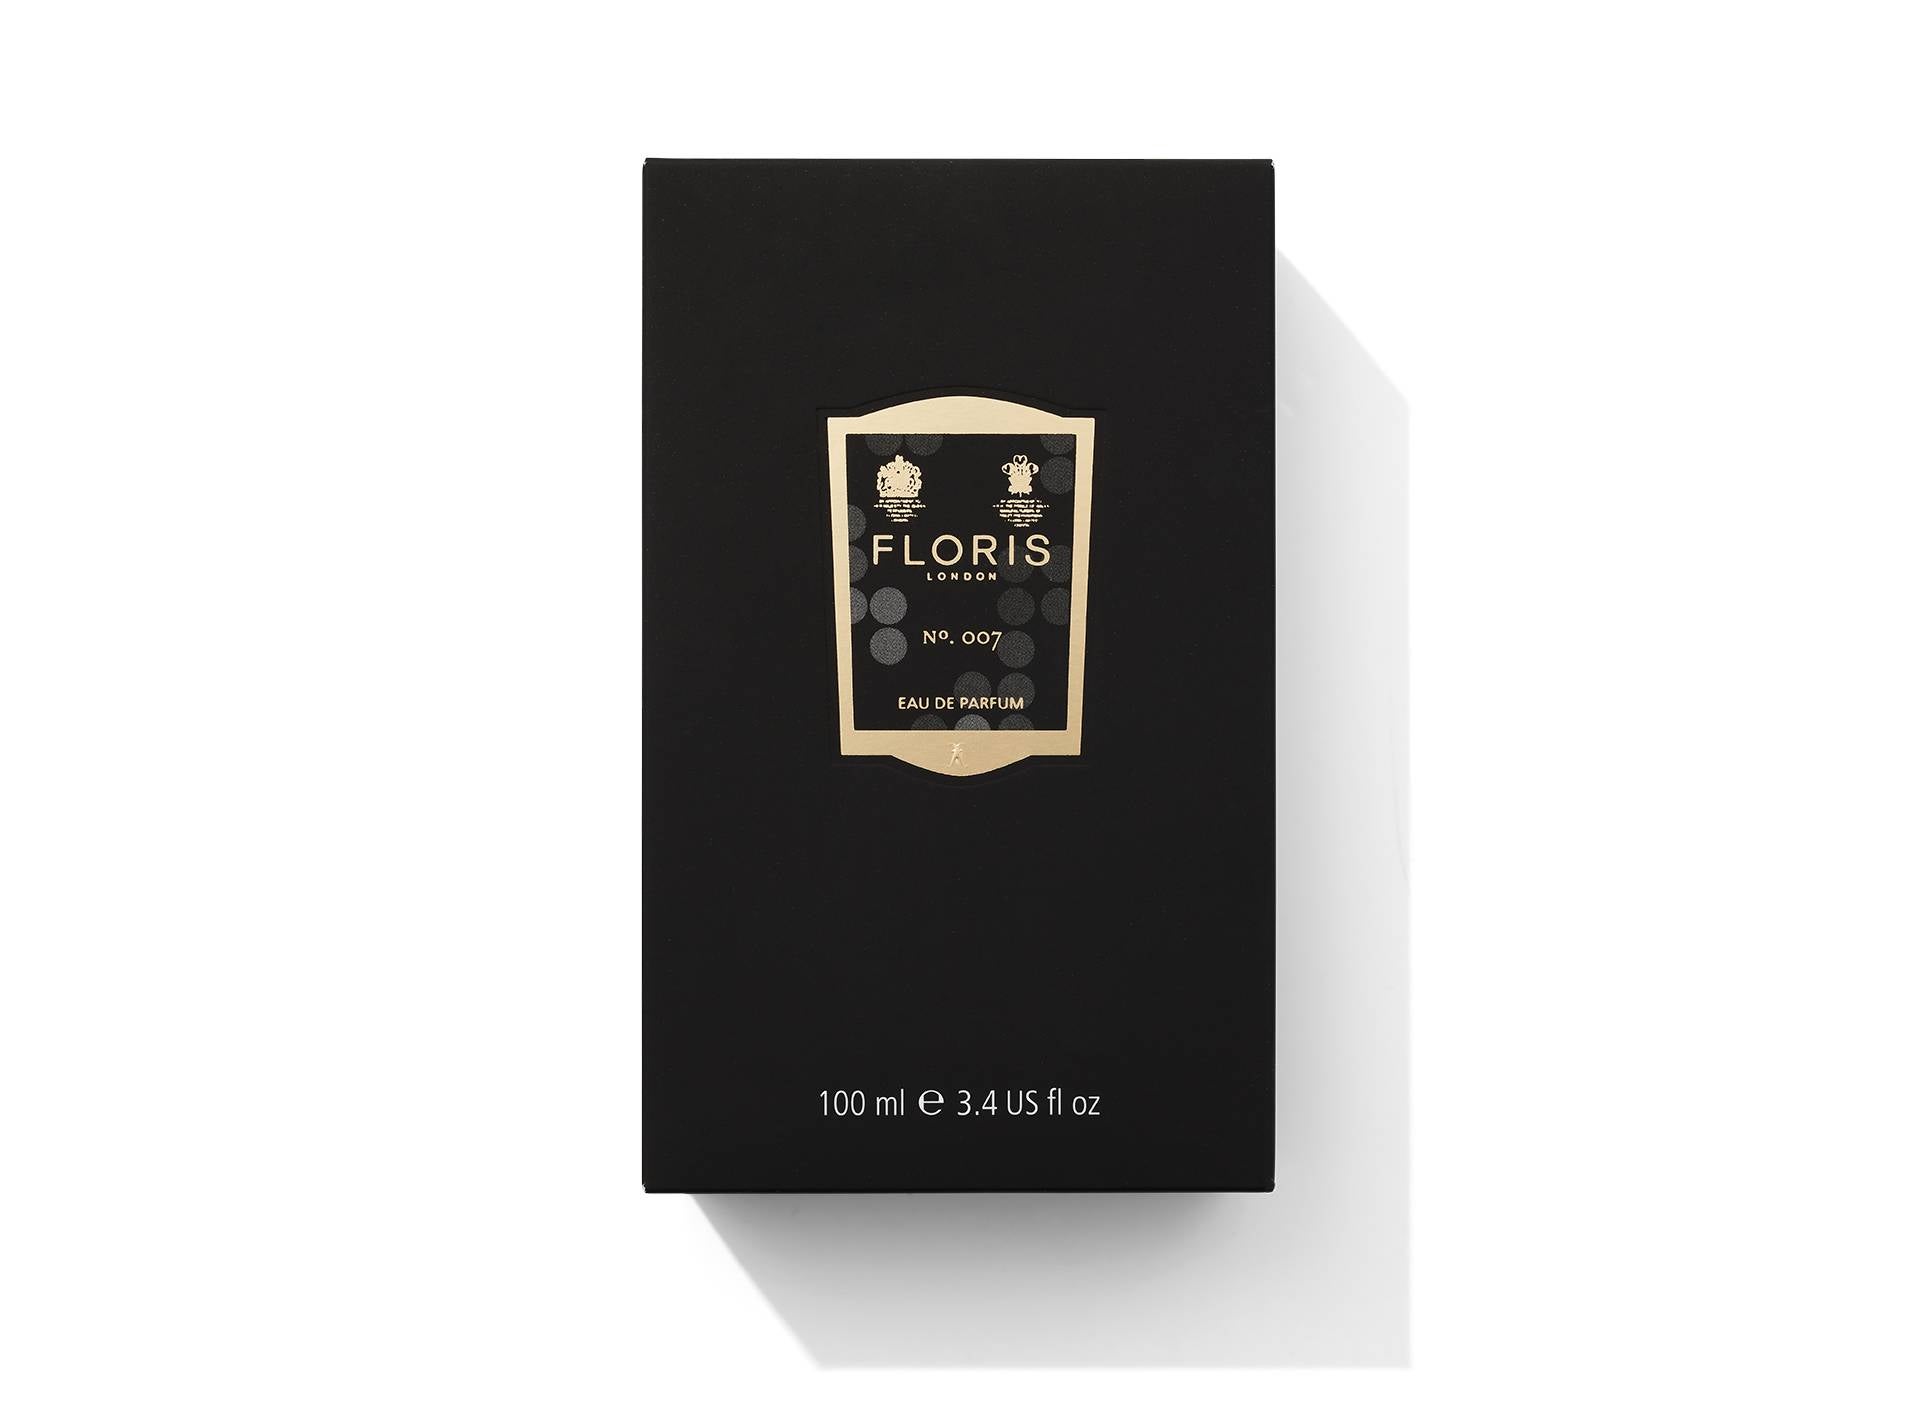 Floris Launch Fragrance | James Bond 007